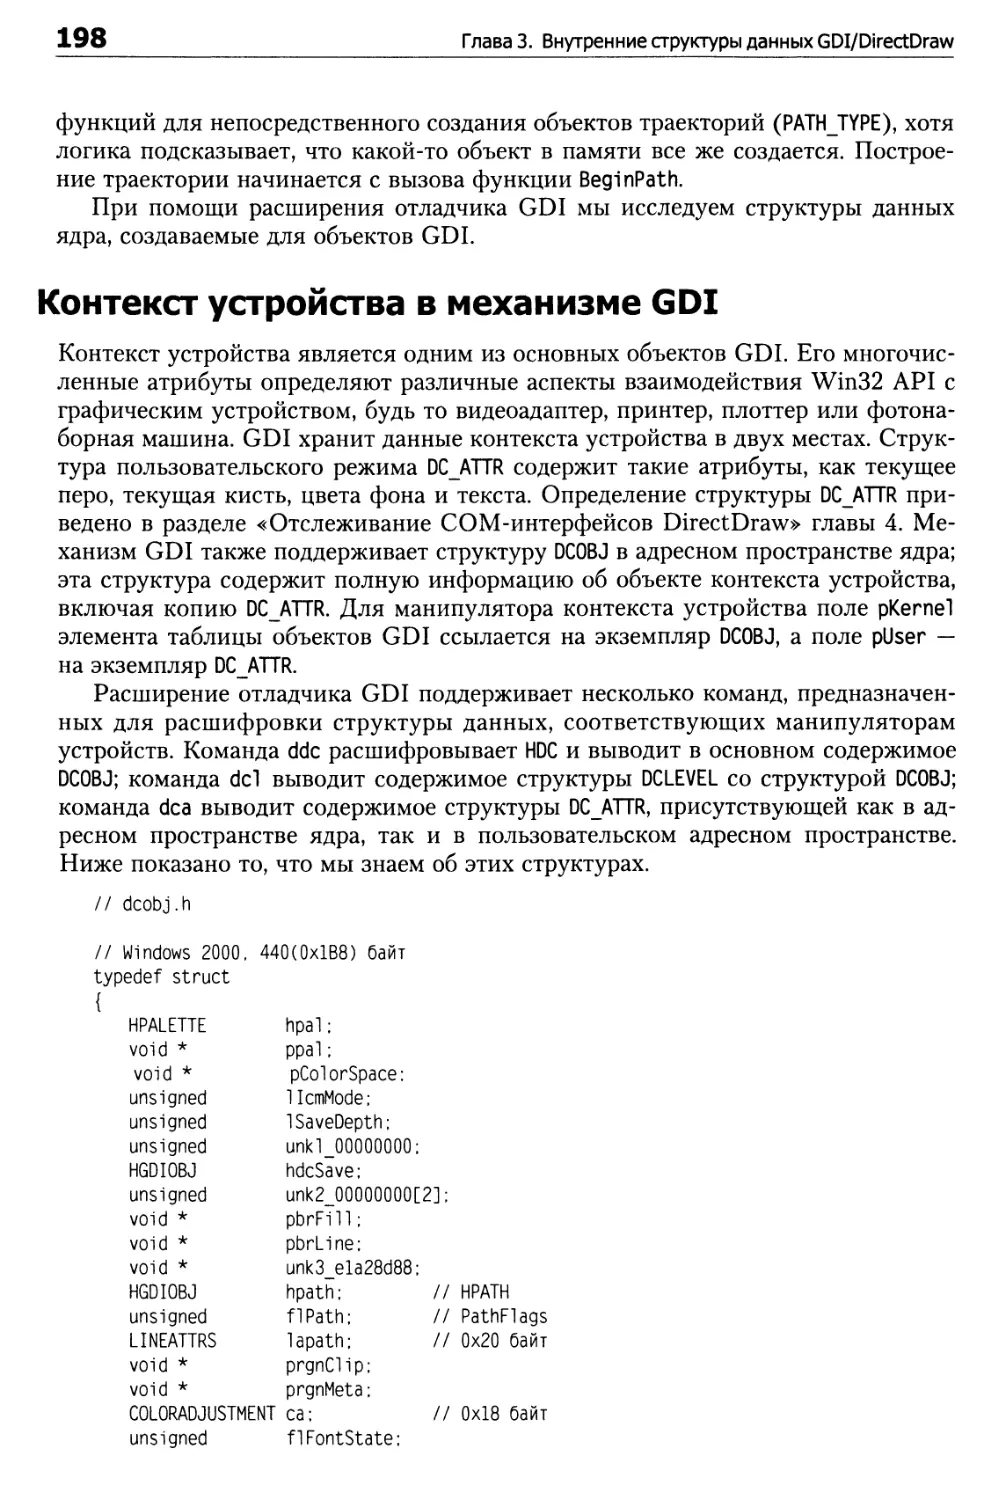 Контекст устройства в механизме GDI